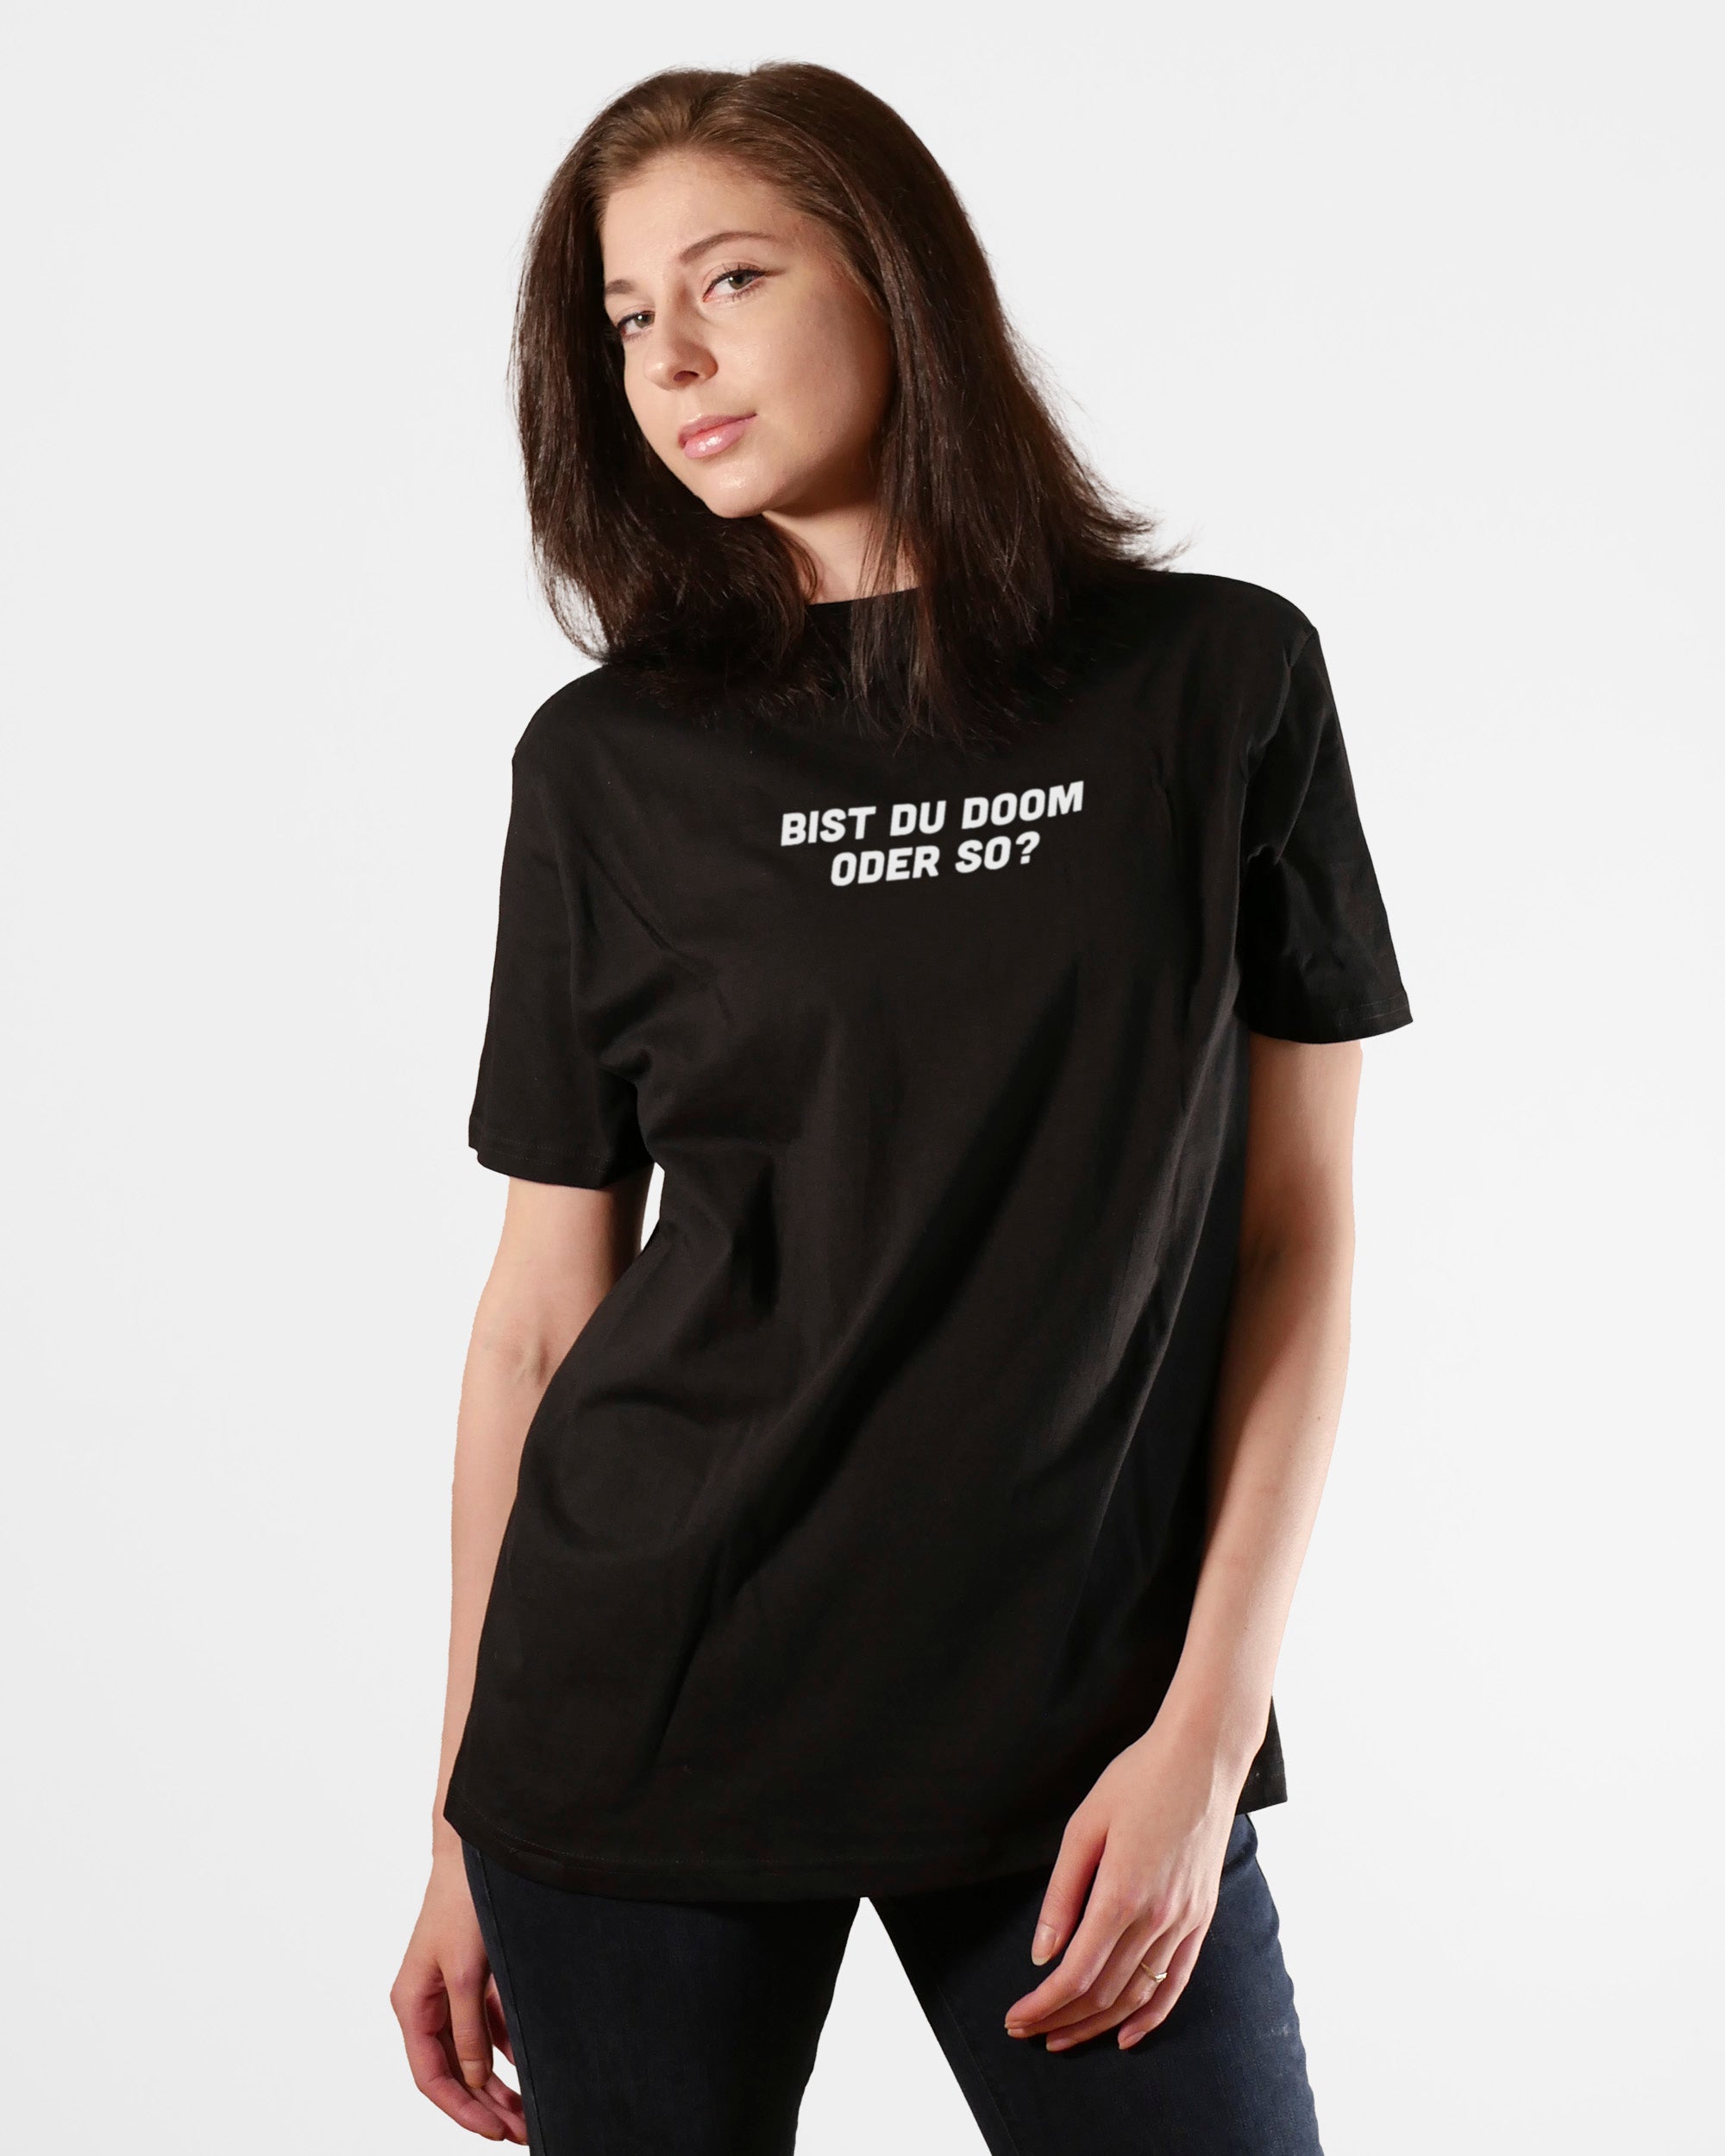 Bist du Doom oder so? | 3-Style T-Shirt